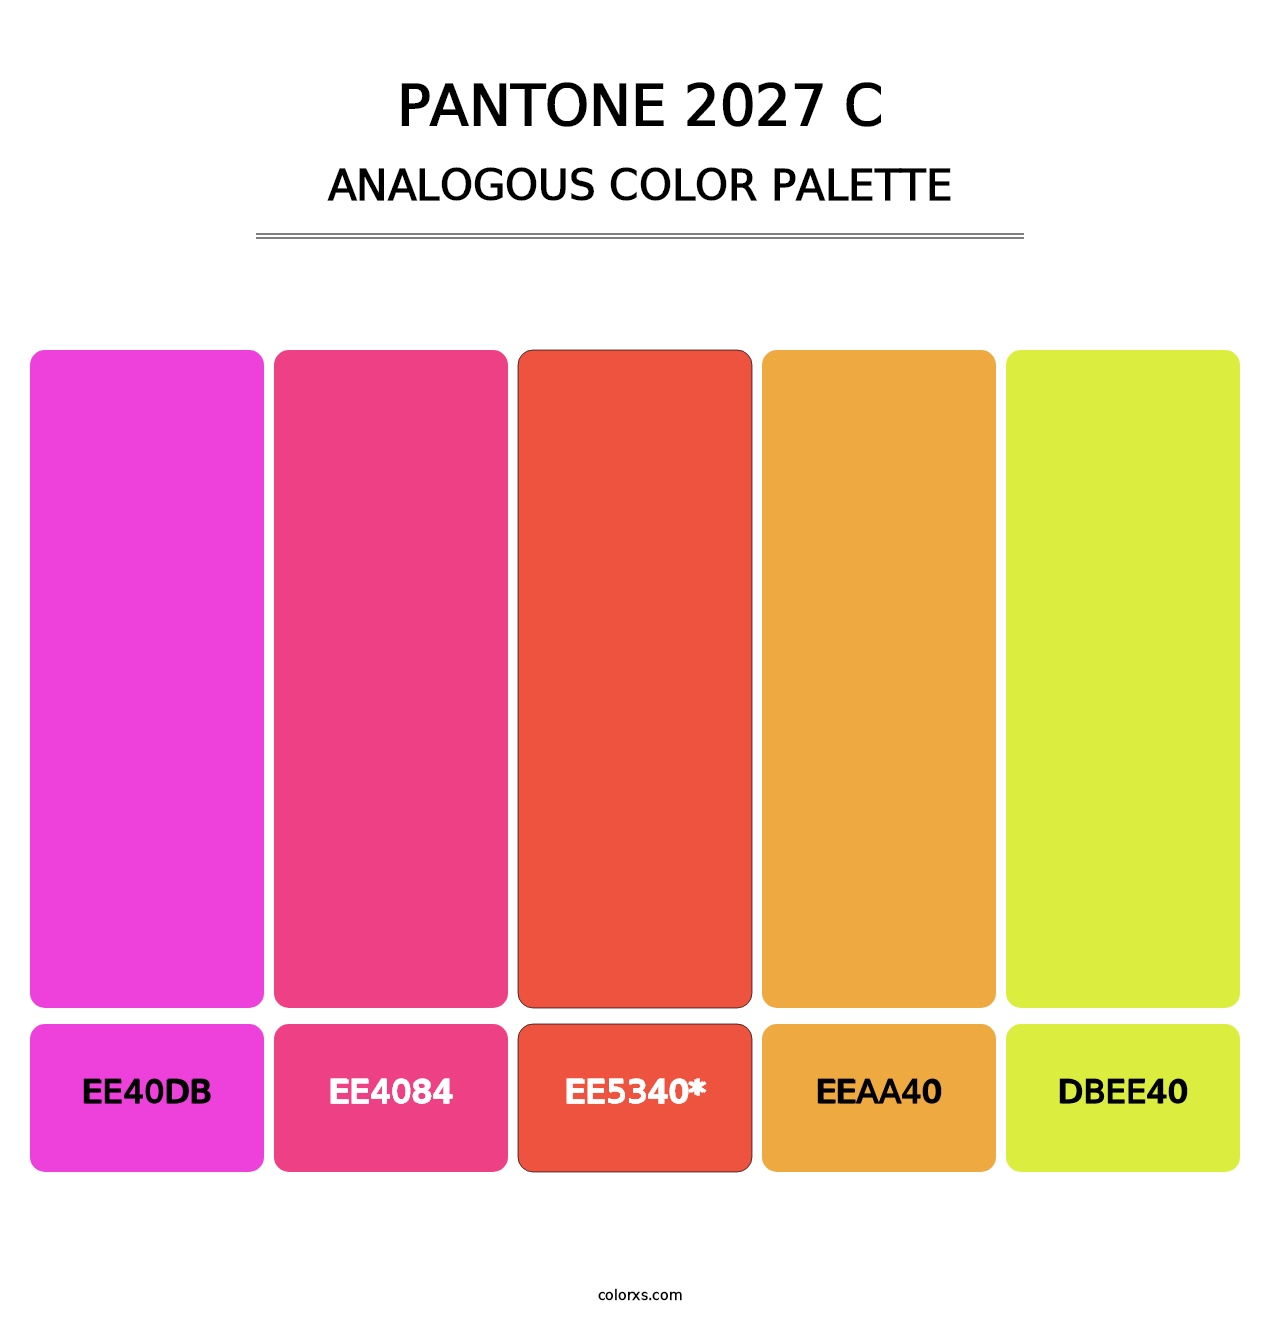 PANTONE 2027 C - Analogous Color Palette